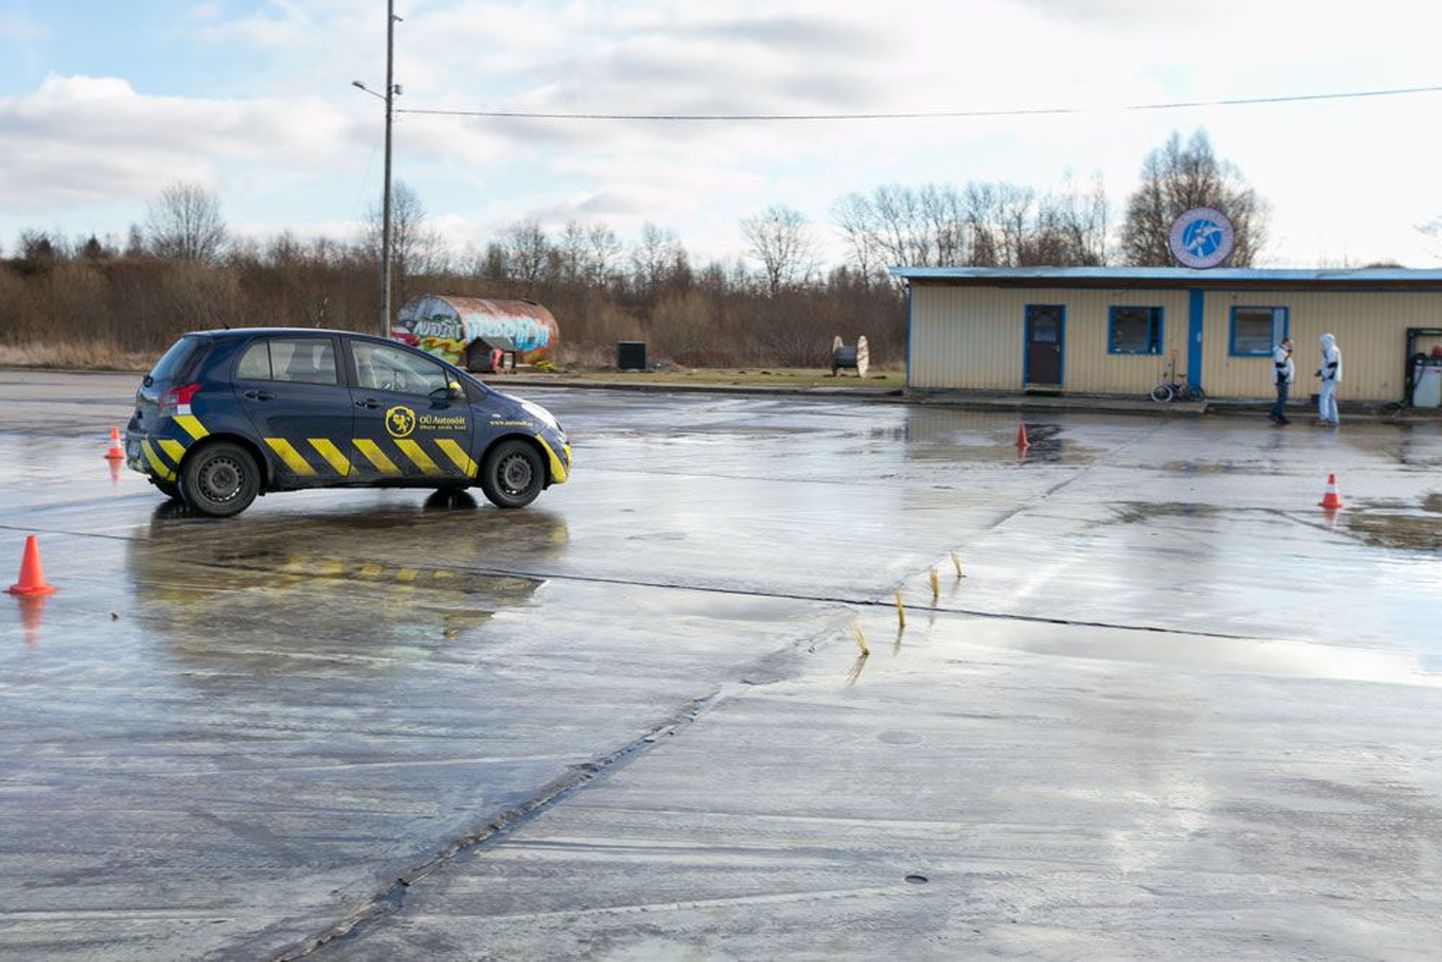 OÜ Autosõit valduses olev Raadi libedasõidurada on Tartu ümbruse ainus, eilegi harjutati seal usinalt.